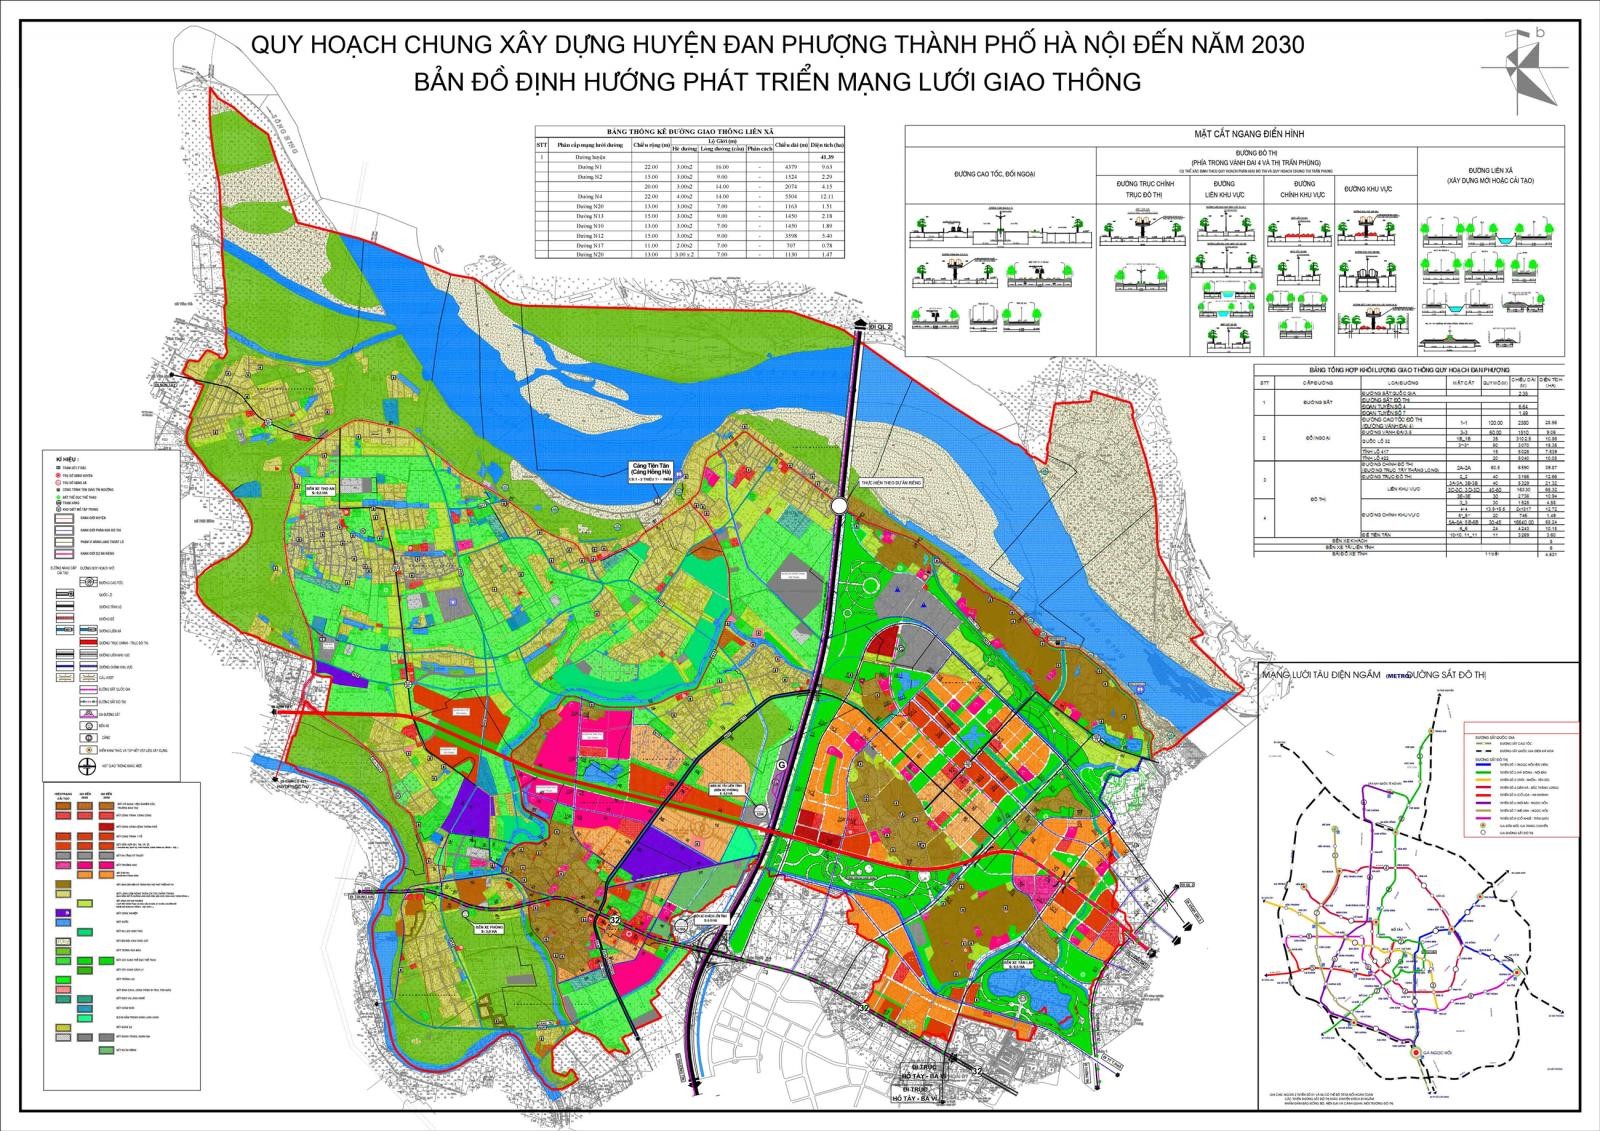 
Hình ảnh bản đồ quy hoạch giao thông huyện Đan Phượng đến năm 2030
